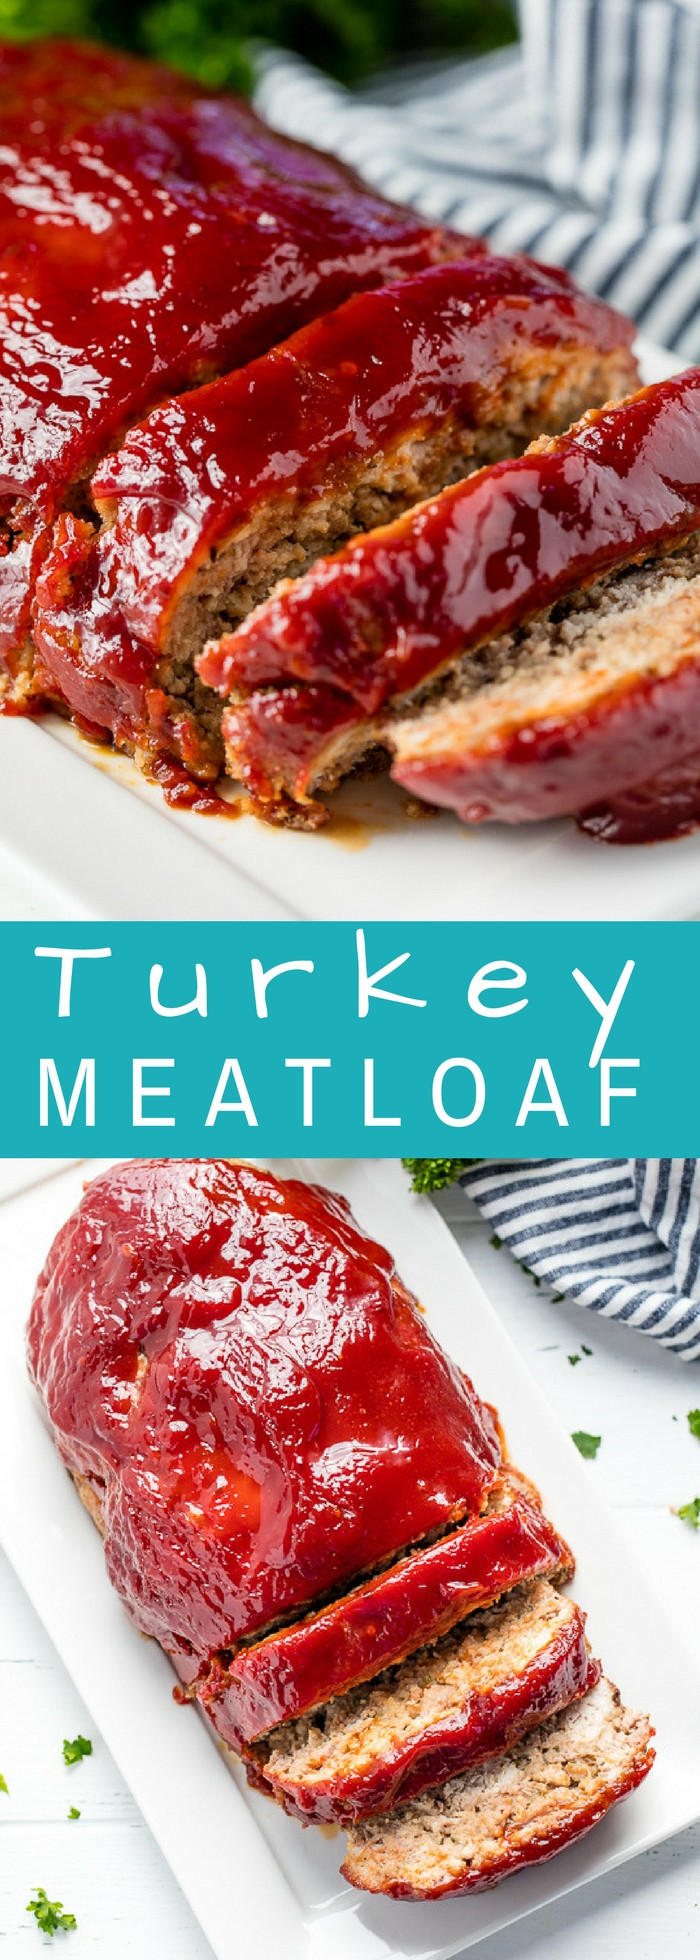 Meatloaf Recipes Turkey
 Turkey Meatloaf